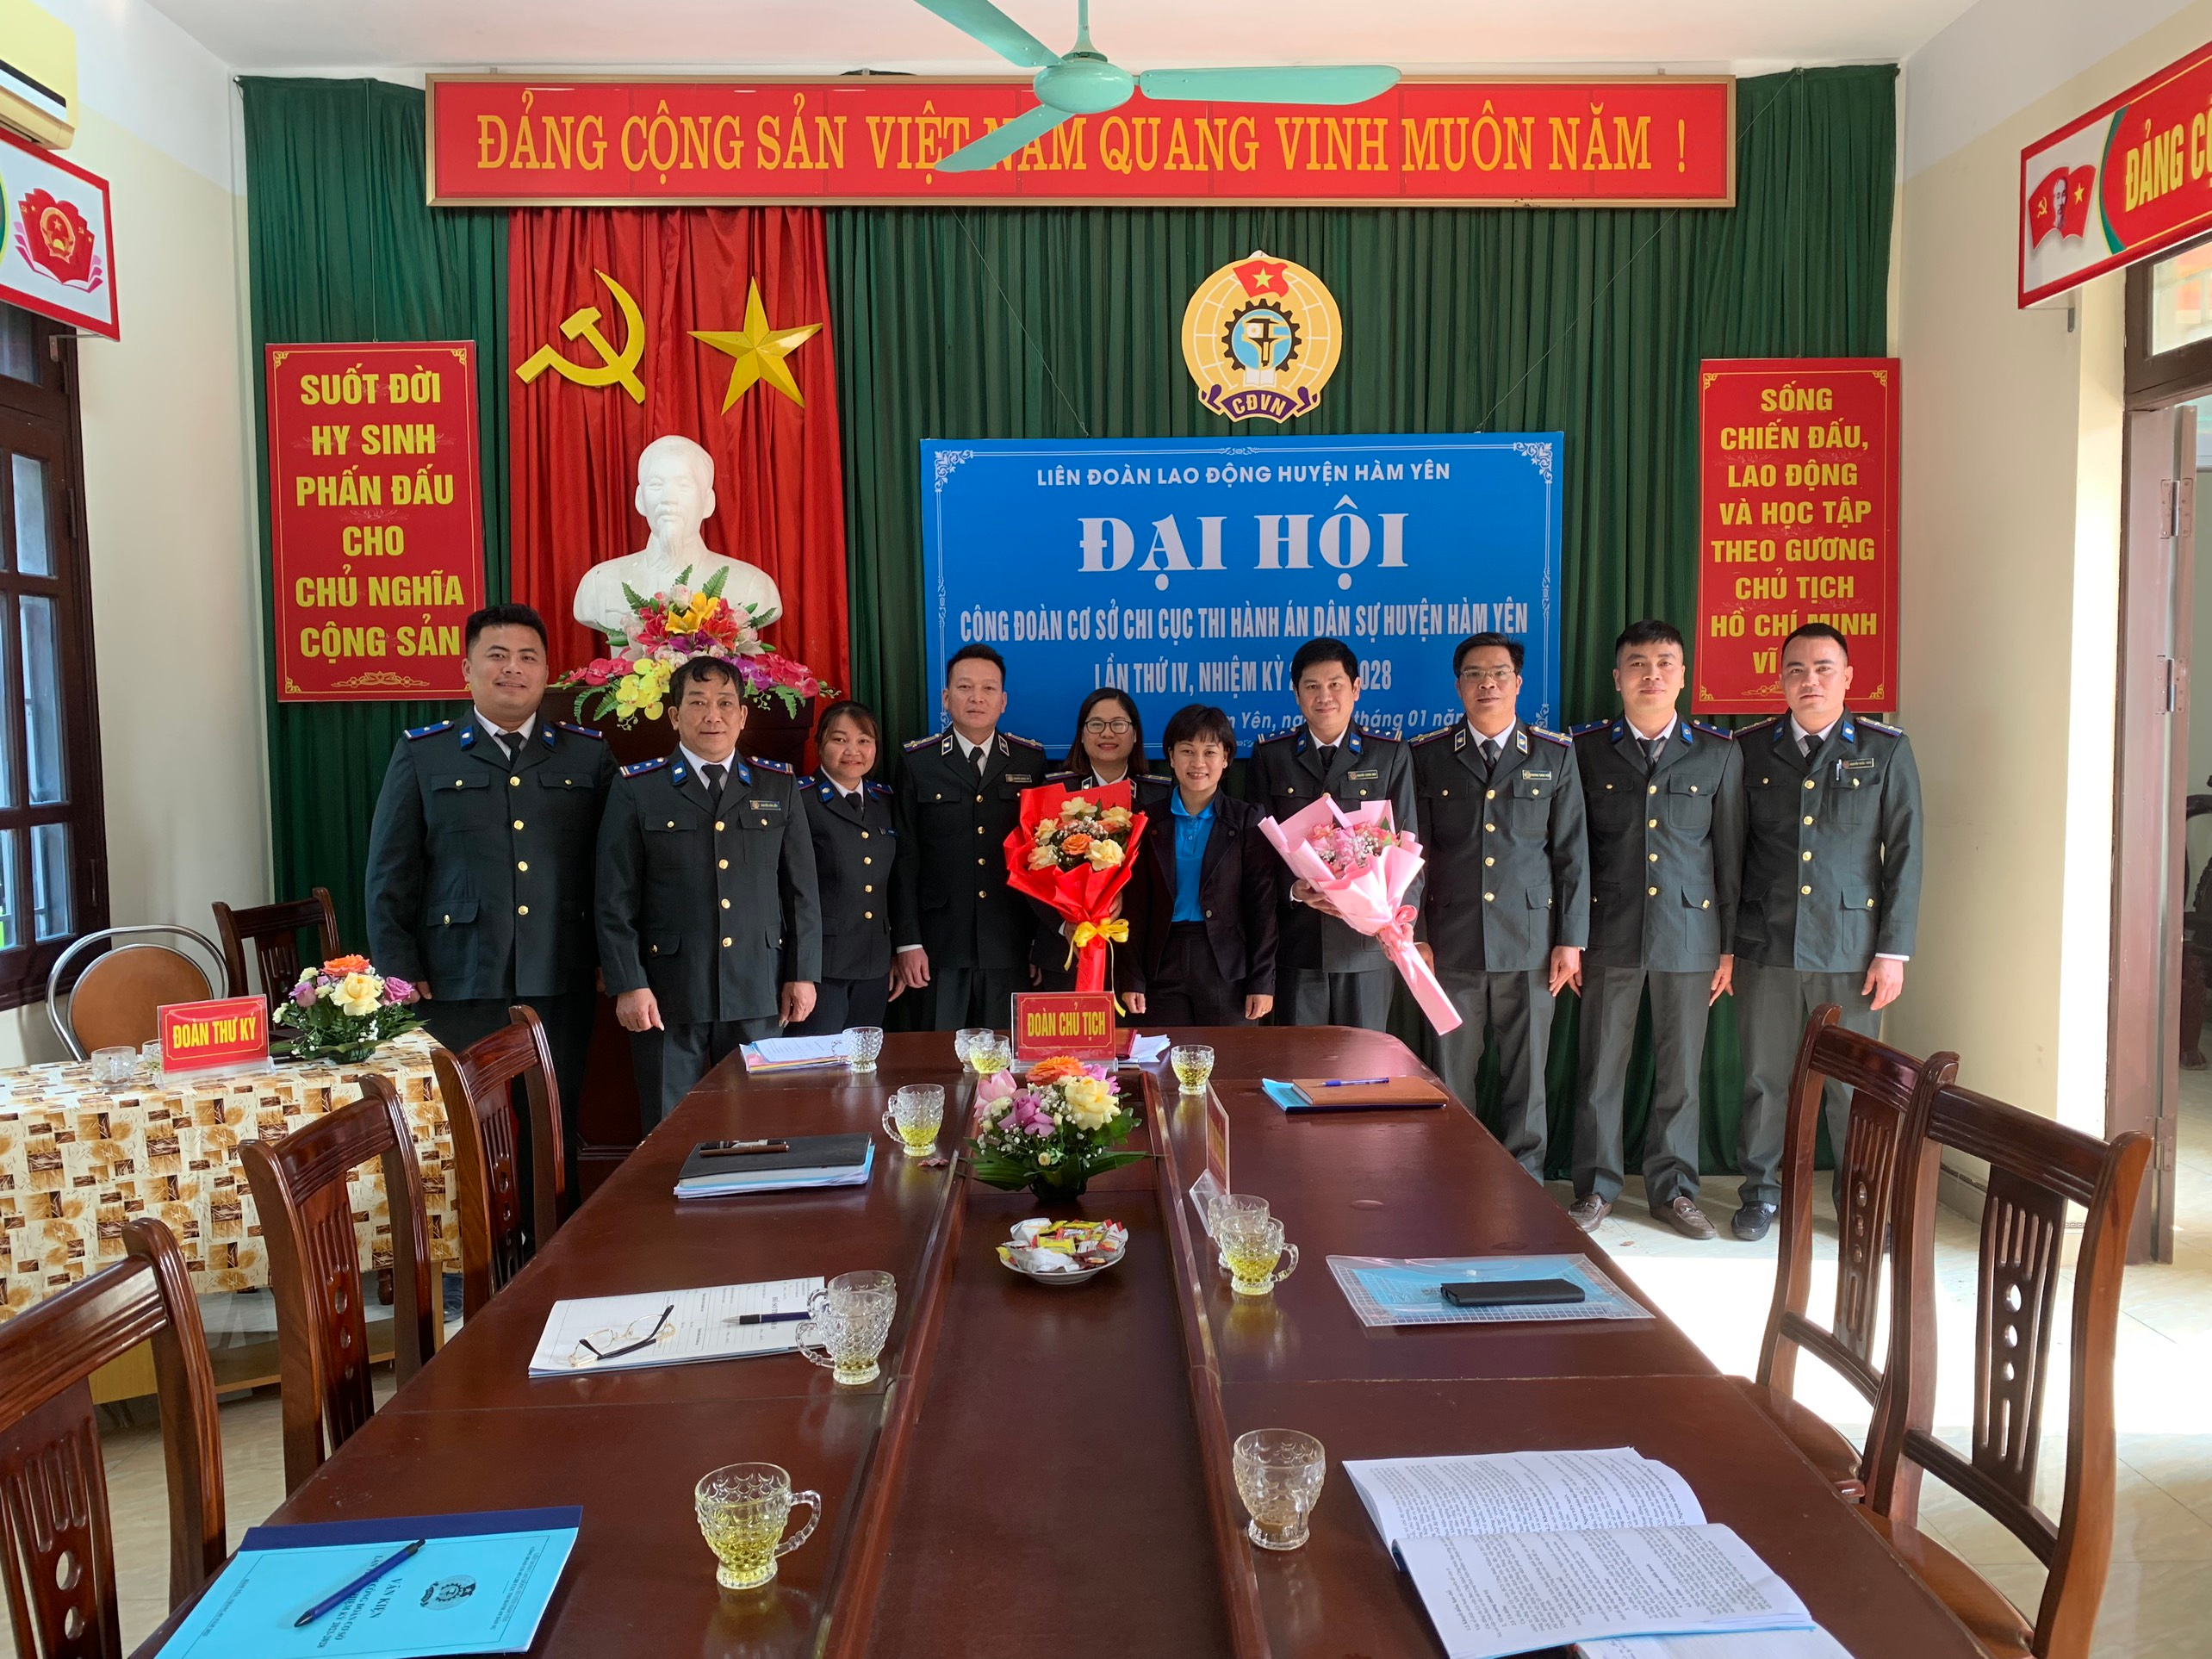 Công đoàn cơ sở Chi cục Thi hành án dân sự huyện Hàm Yên tổ chức thành công Đại hội lần thứ IV, nhiệm kỳ 2023-2028